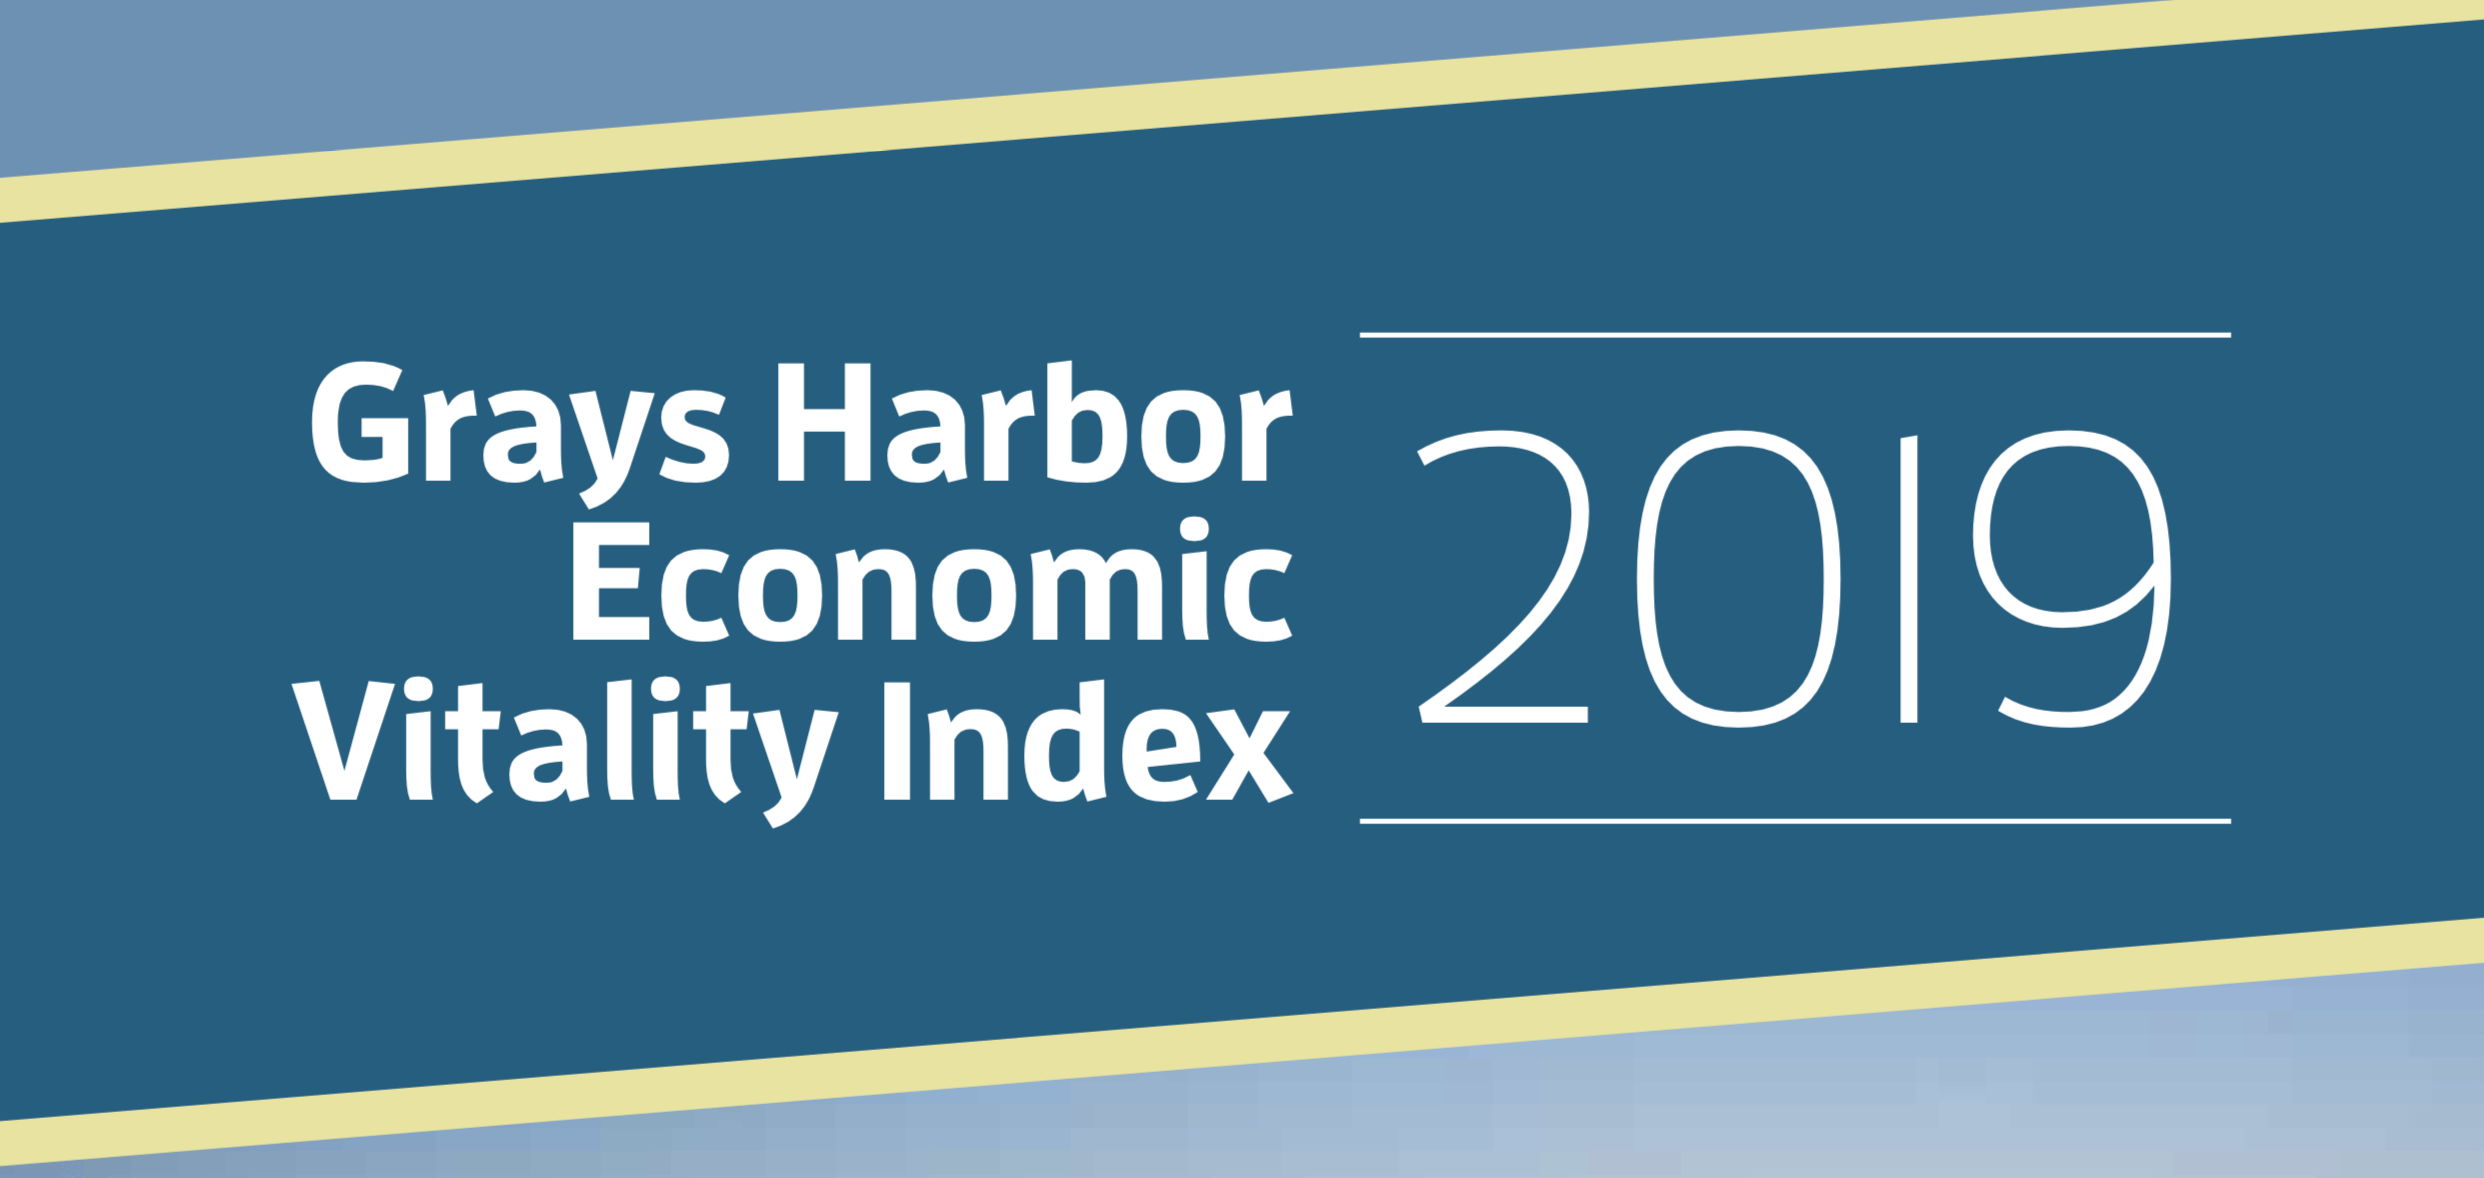 Grays Harbor Economic Vitality Index 2019